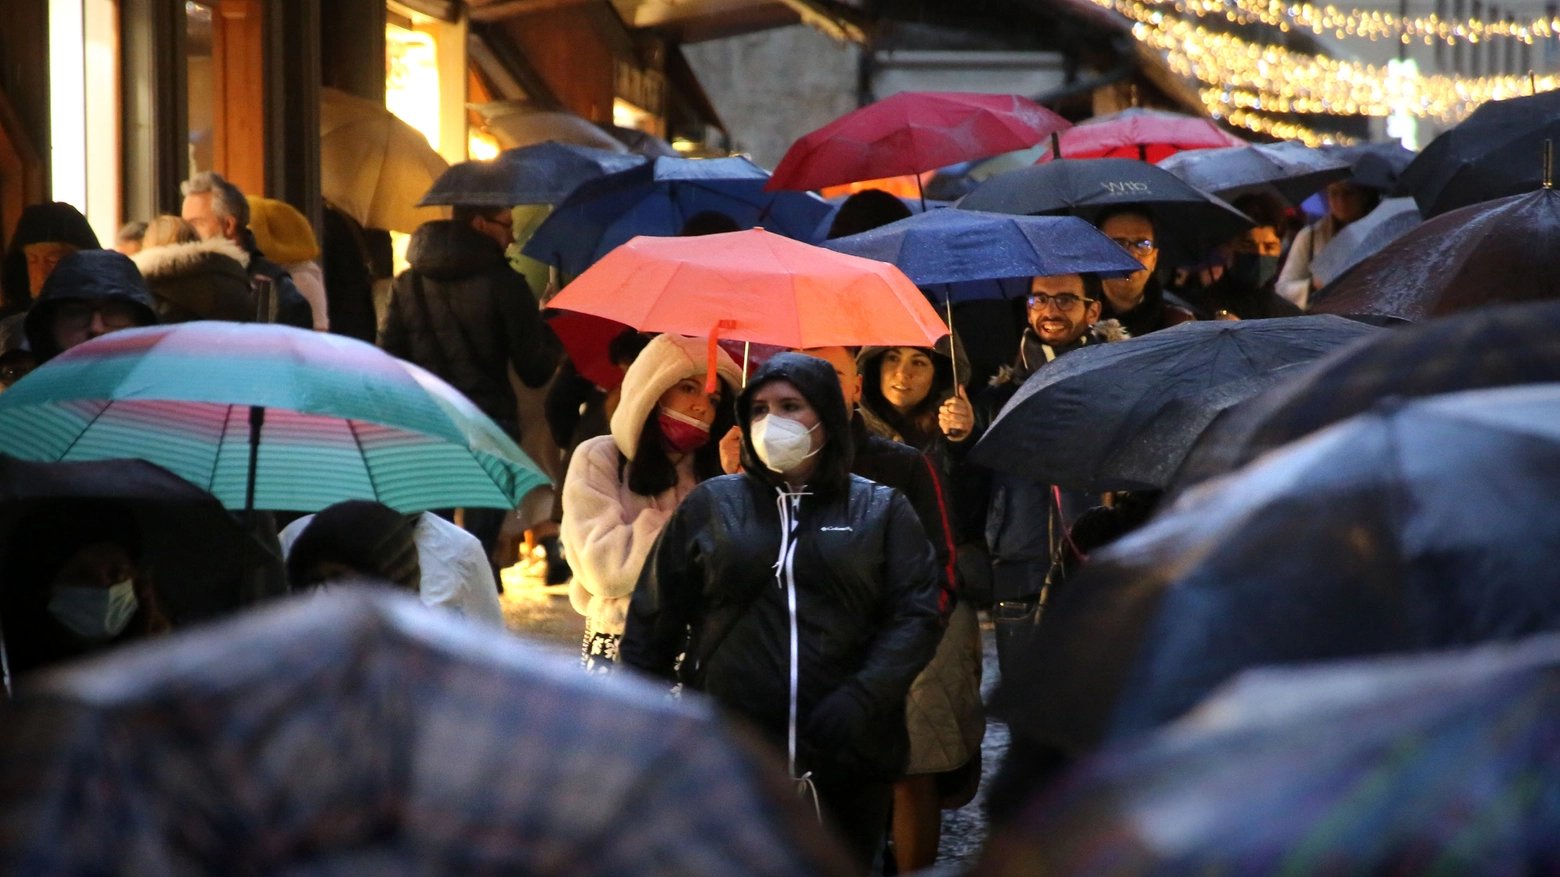 Ombrelli aperti per la pioggia (Pressphoto)